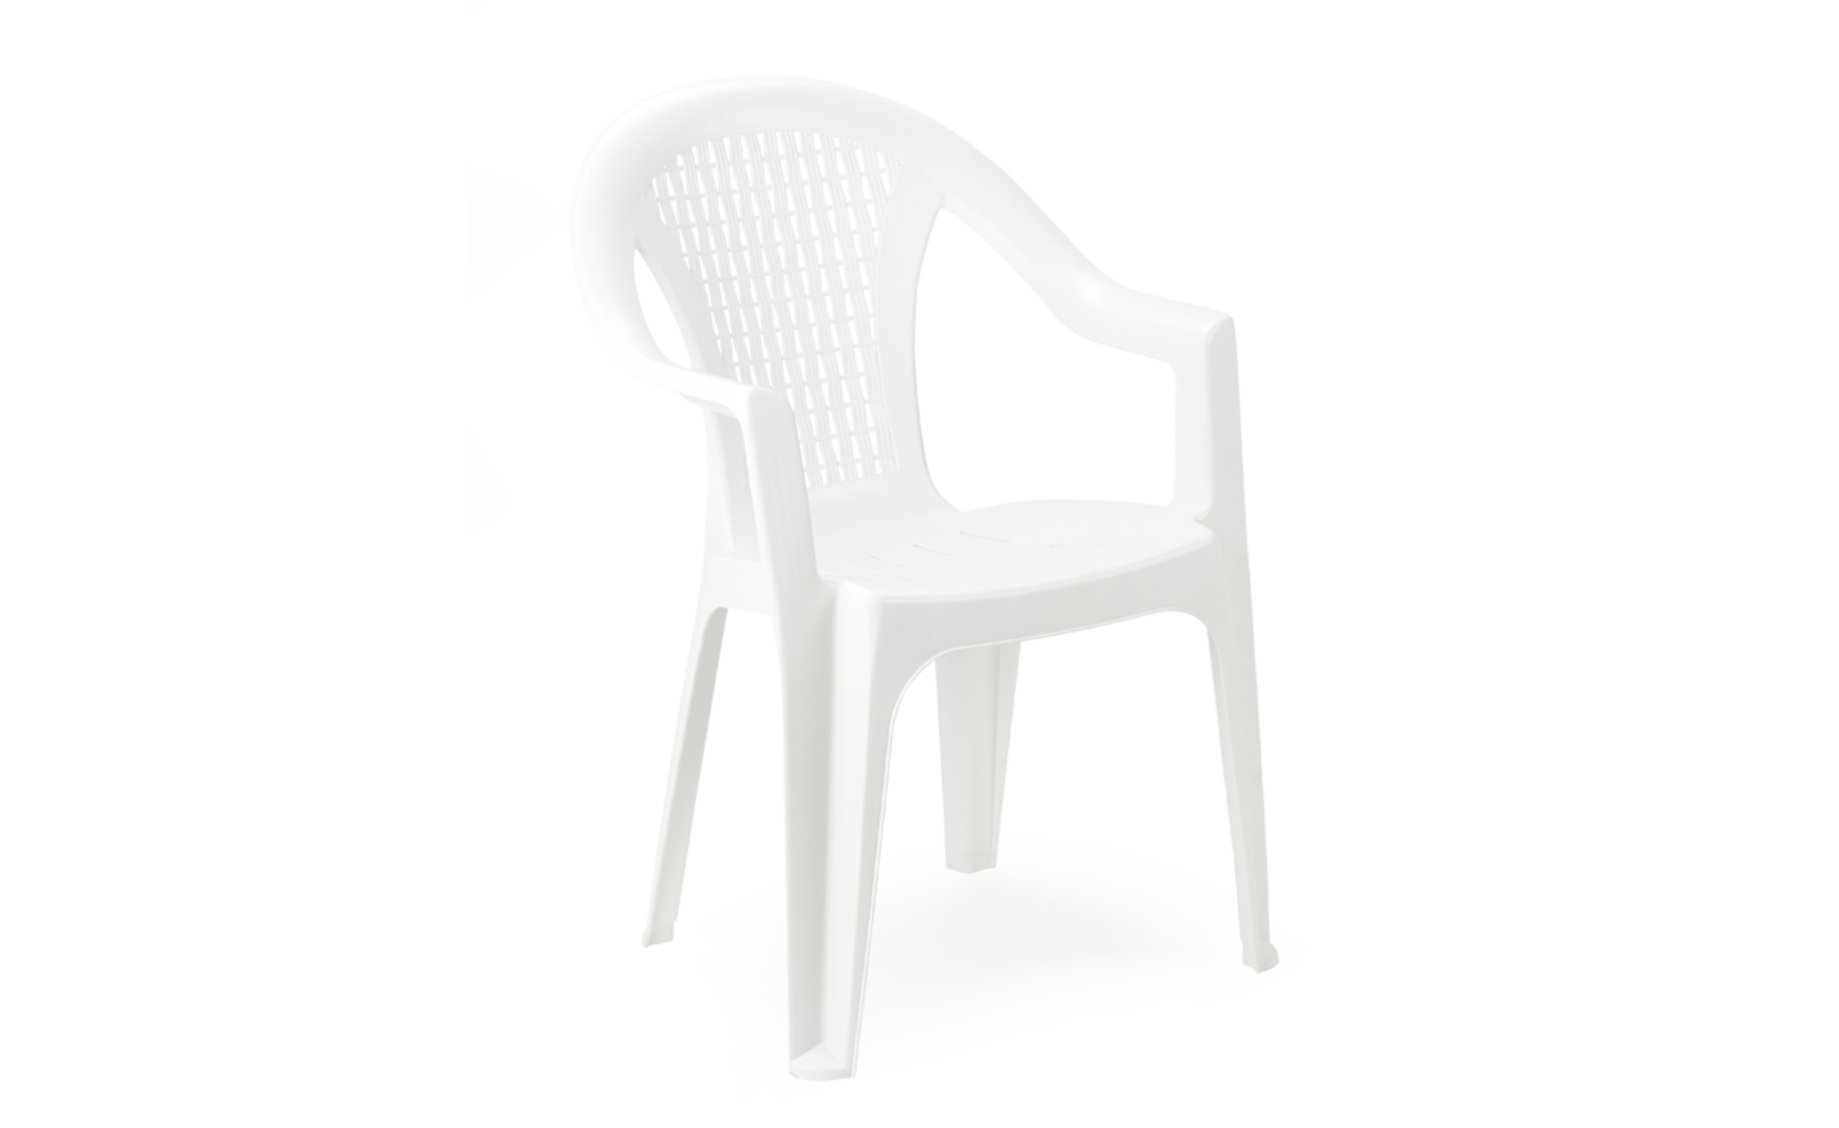 Maui plastična baštenska stolica 55x53,2x82cm bela